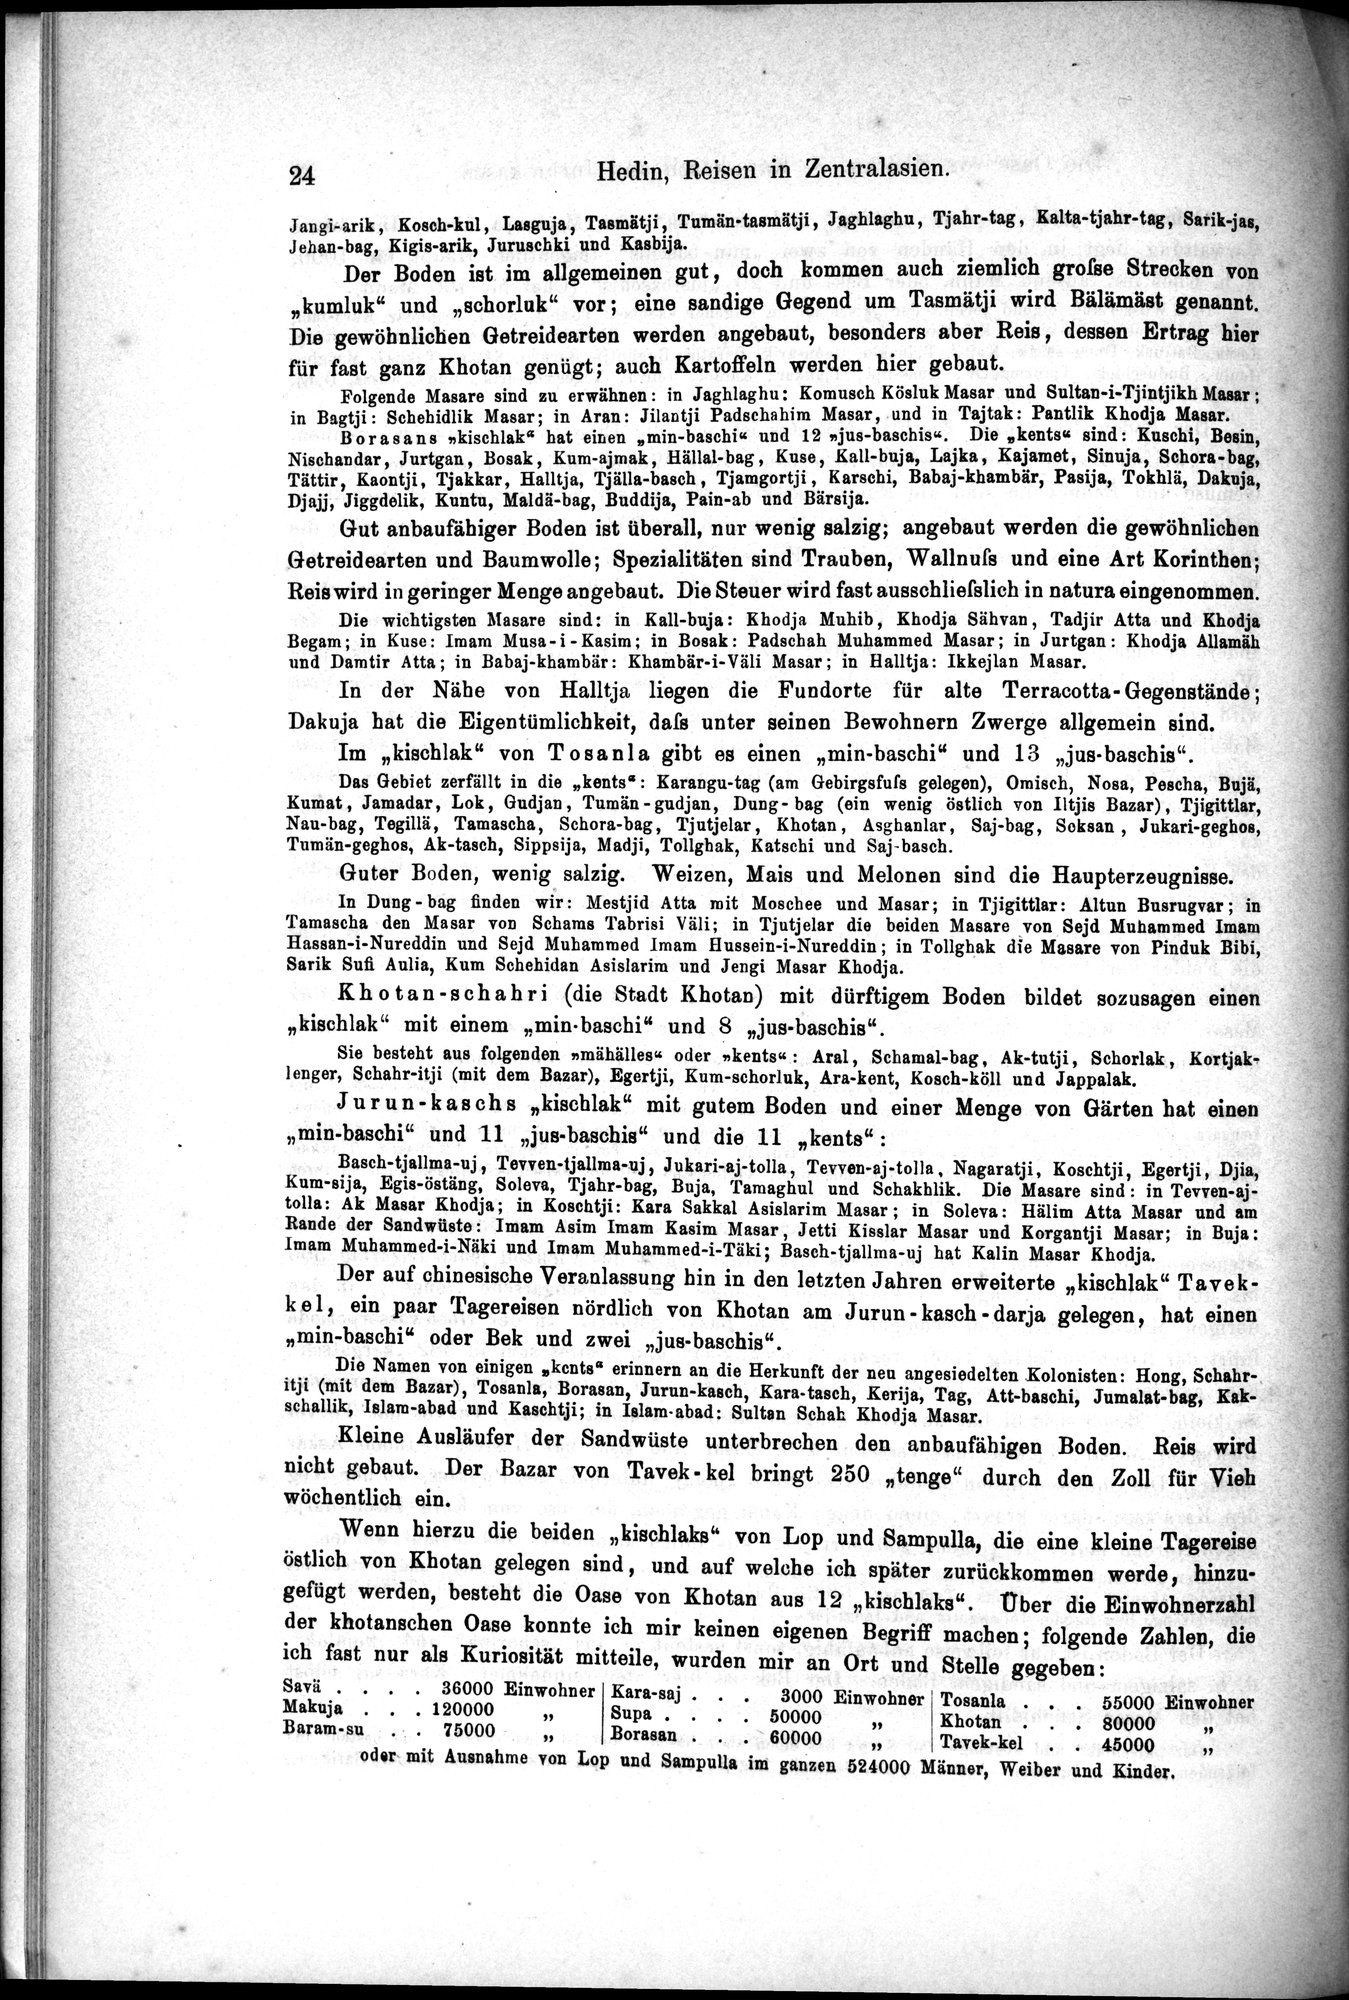 Die Geographische-Wissenschaftlichen Ergebnisse meiner Reisen in Zentralasien, 1894-1897 : vol.1 / Page 36 (Grayscale High Resolution Image)